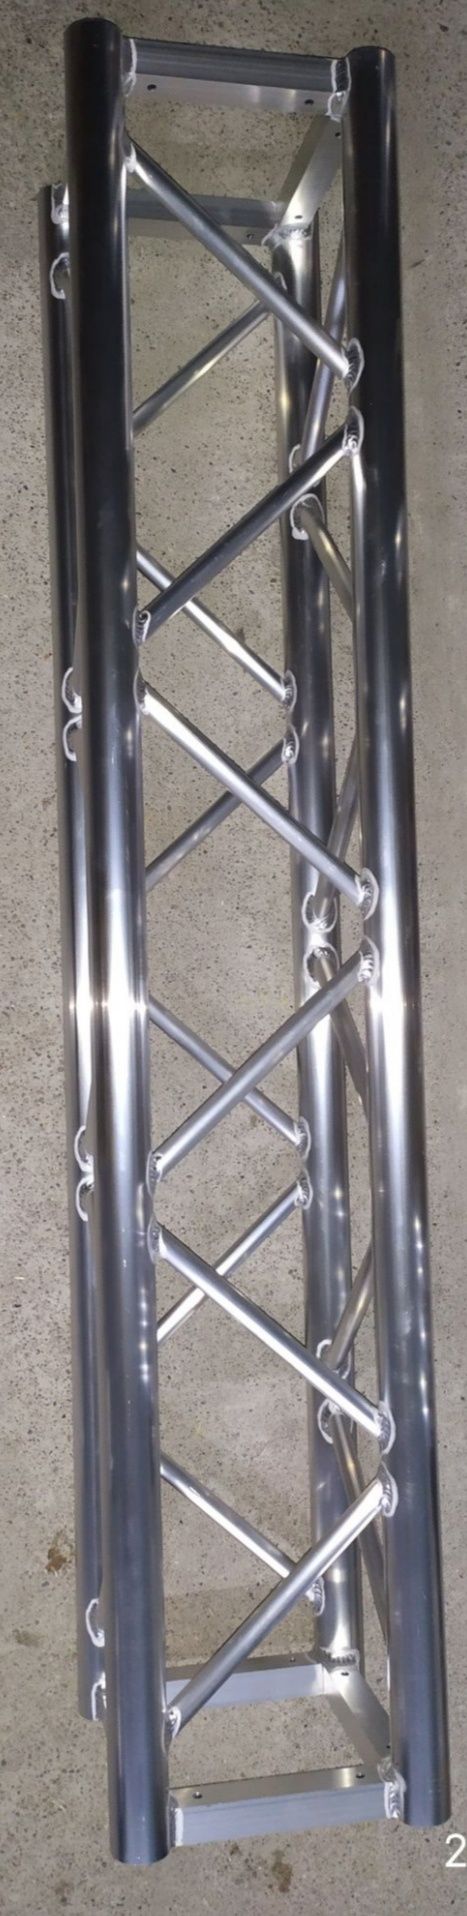 Stoisko wystawnicze aluminiowe Quadro T29 6x4x3